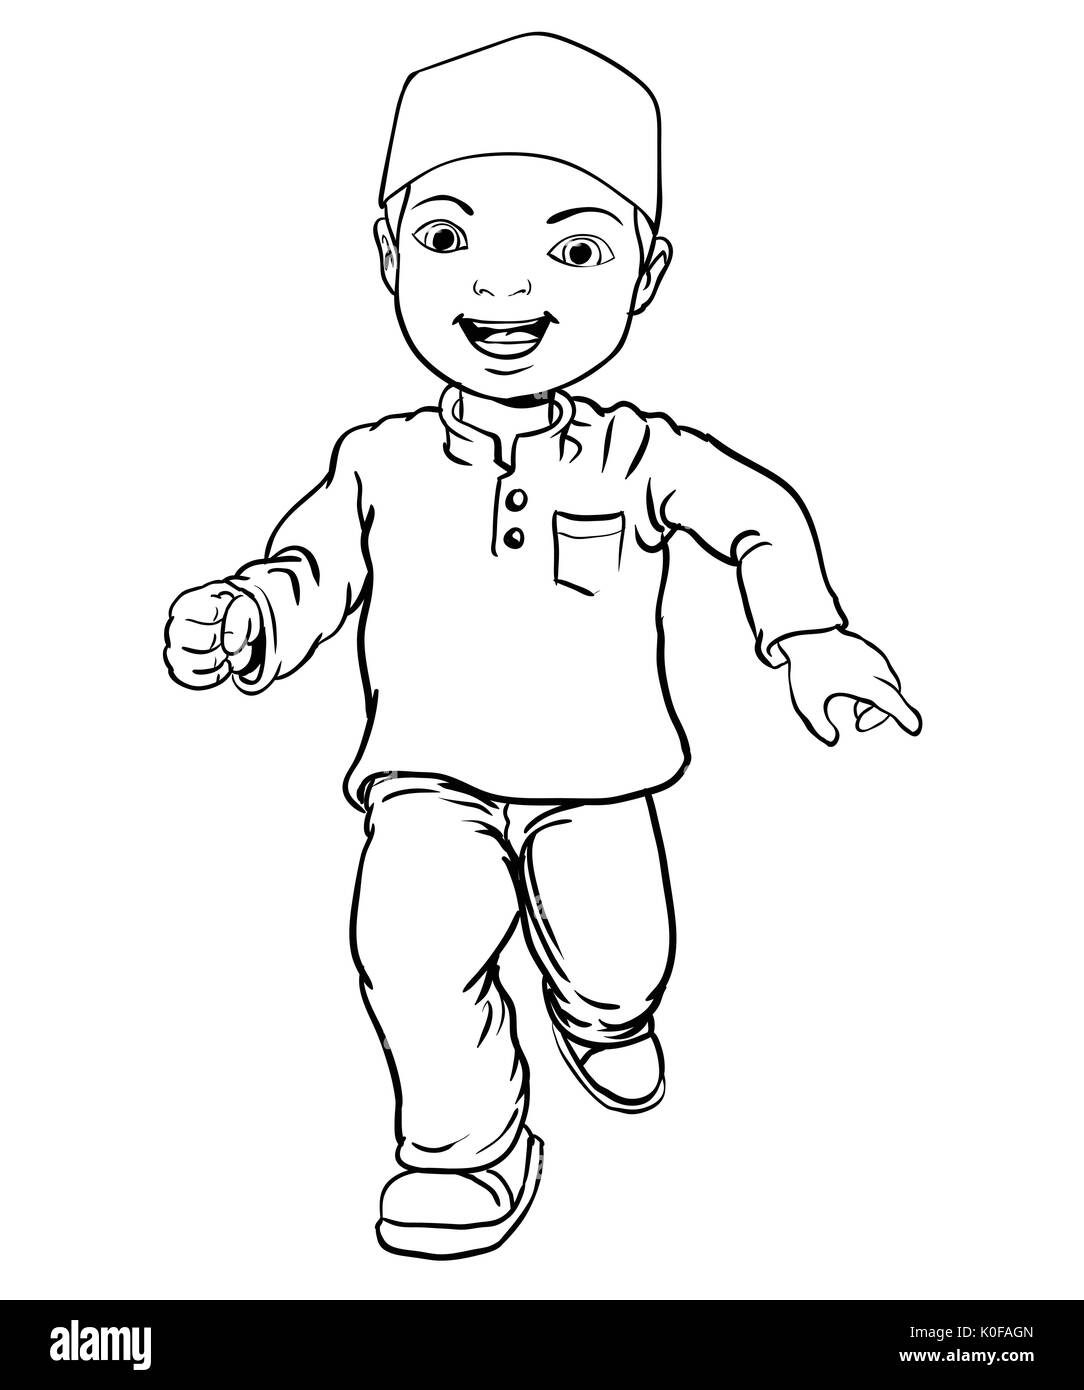 Muslimischer junge Hand Zeichnung glücklich machen. Braune Hose, gelb Shirt. Flache Cartoon Stil. Line Vector Illustration Stock Vektor